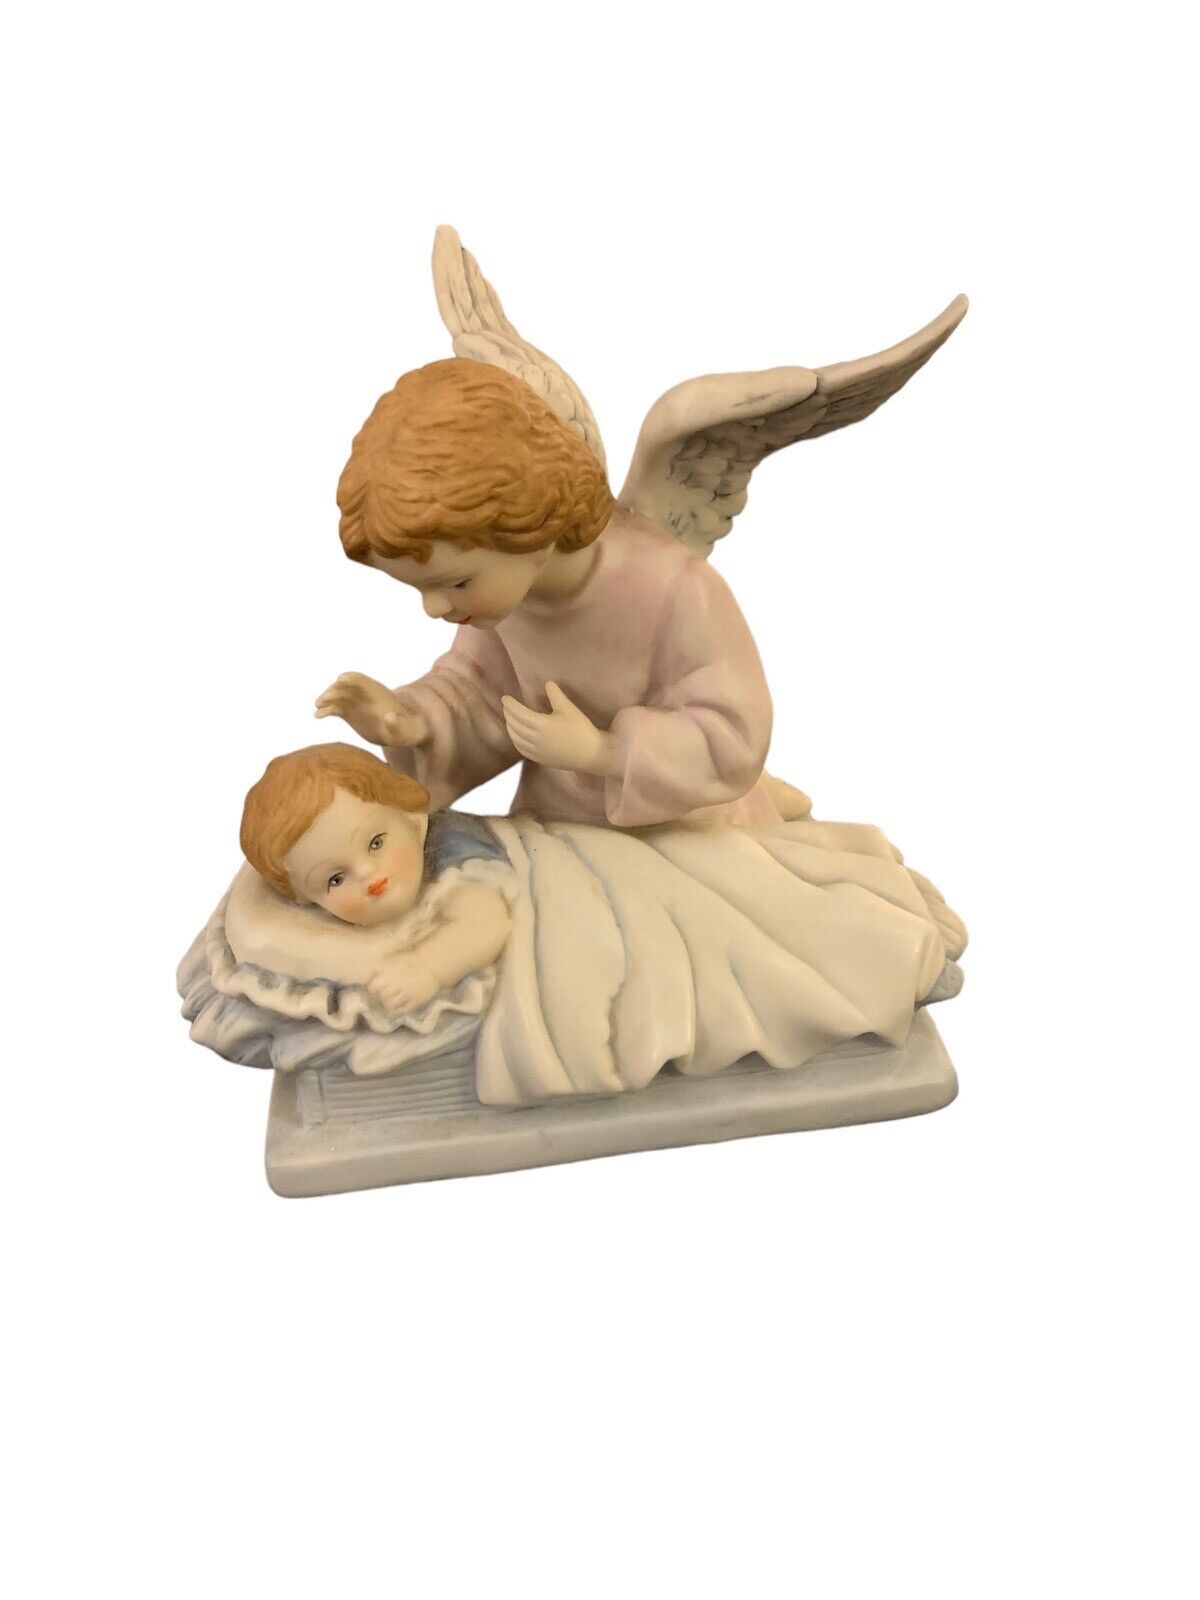 1991 VTG Guardian Angel Over Sleeping Child Ceramic Figurine Lovely Detail